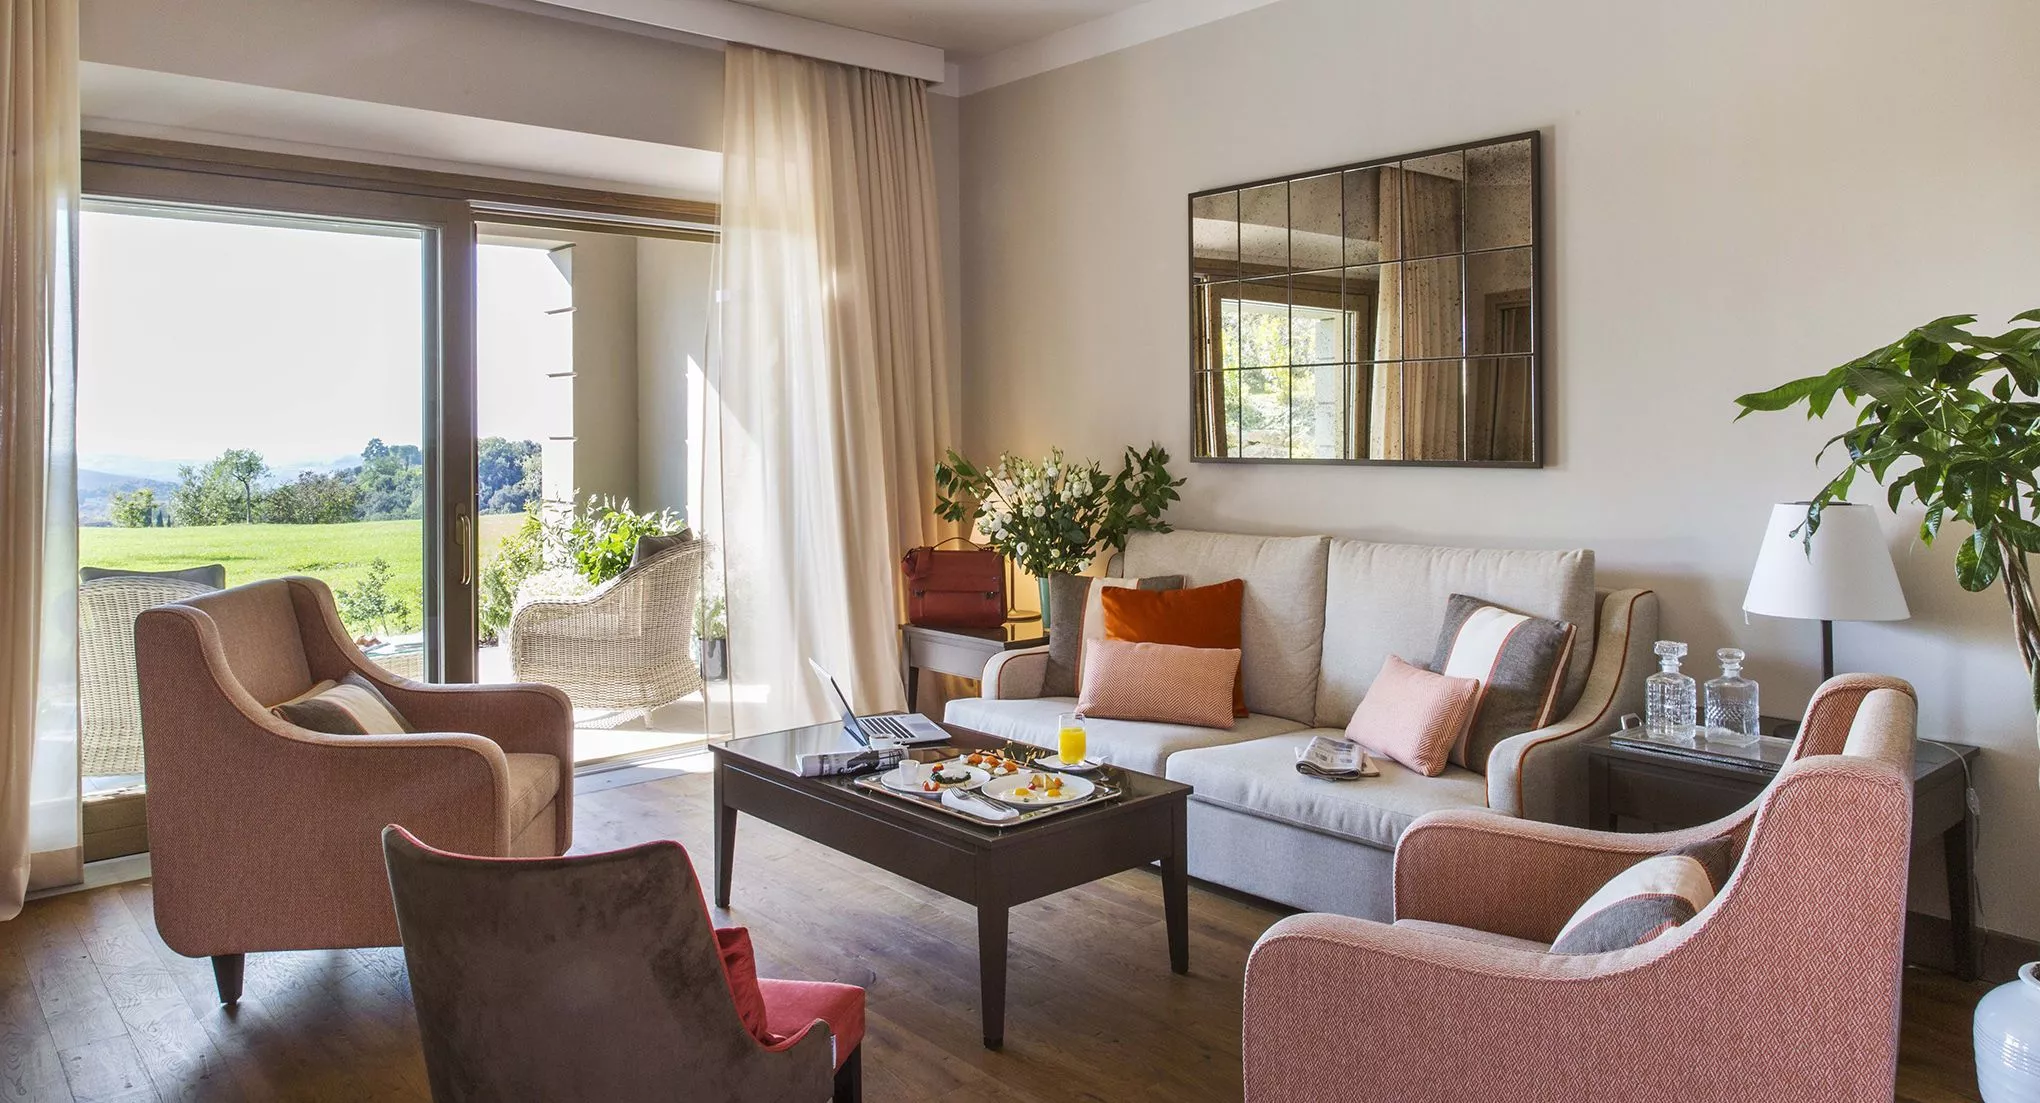 Blick in ein Zimmer des Resorts: warme Farben im Inneren, sattgrüne Toskana-Landschaft vor dem Fenster